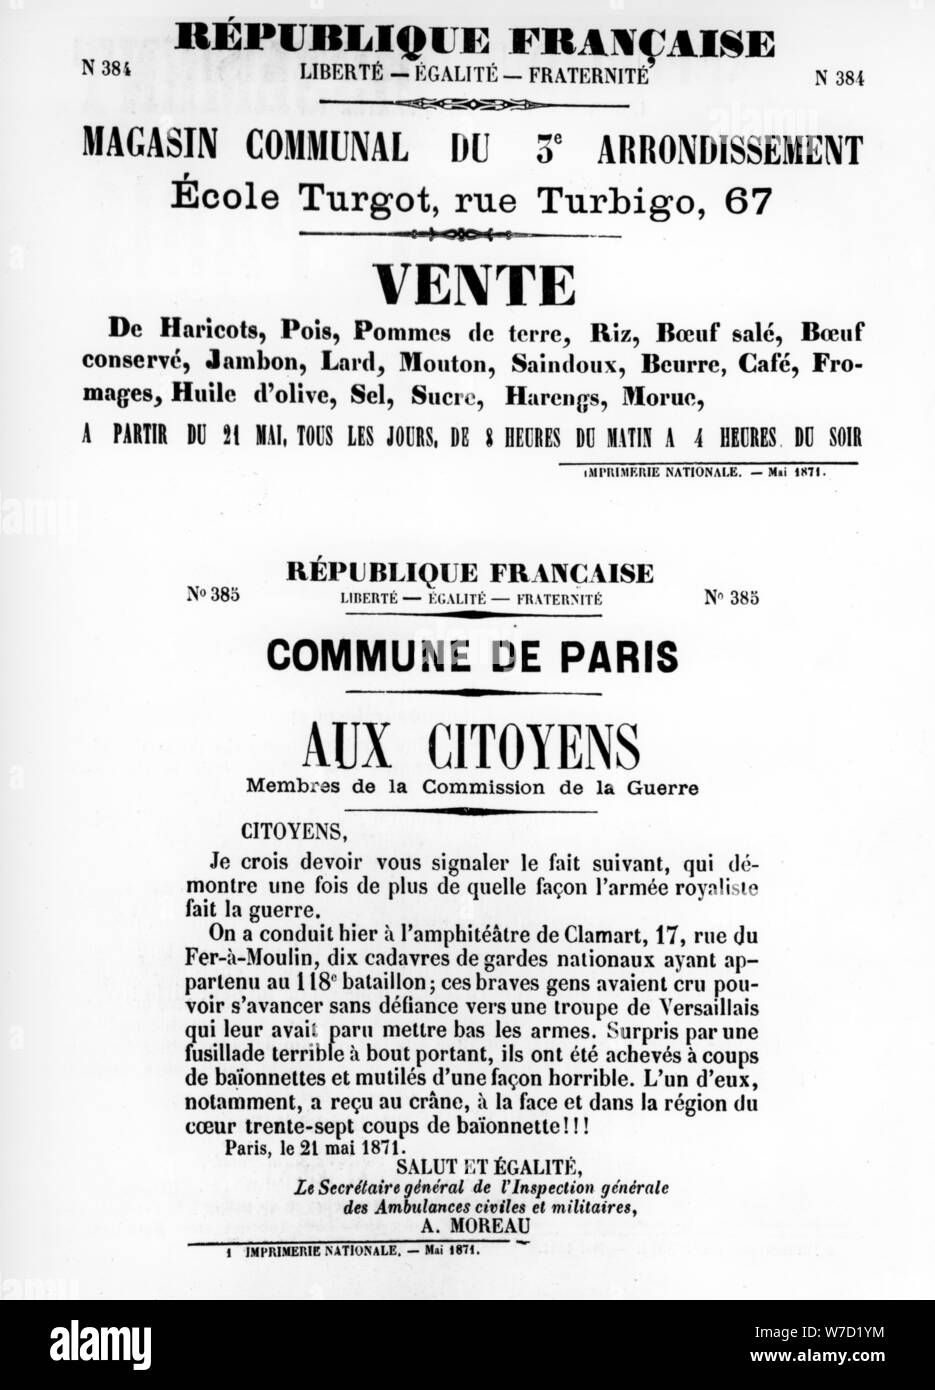 Vente, aus dem Französischen politischen Plakate der Pariser Kommune, Mai 1871. Artist: Unbekannt Stockfoto